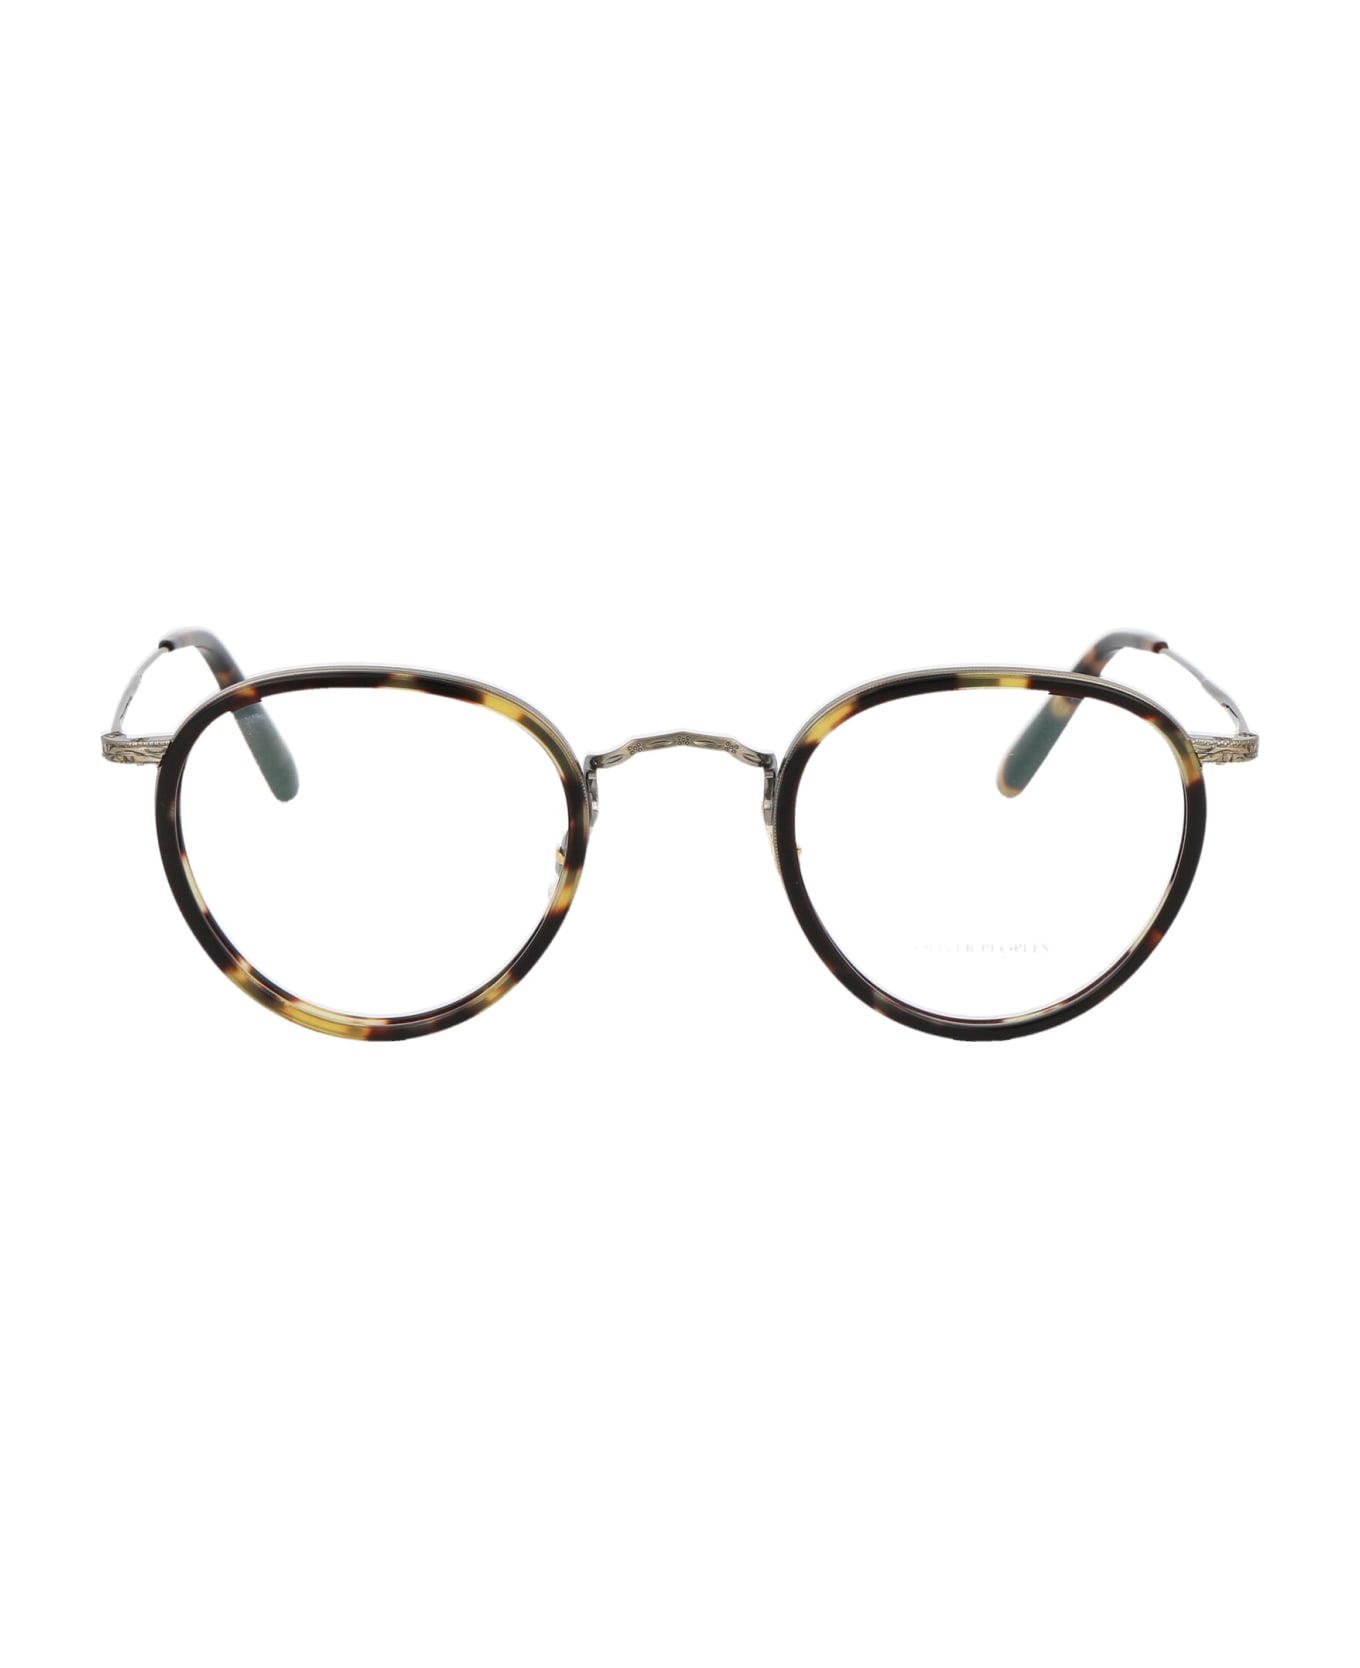 Oliver Peoples Mp-2 Glasses - 5039 Vintage DTB-Antique Gold アイウェア